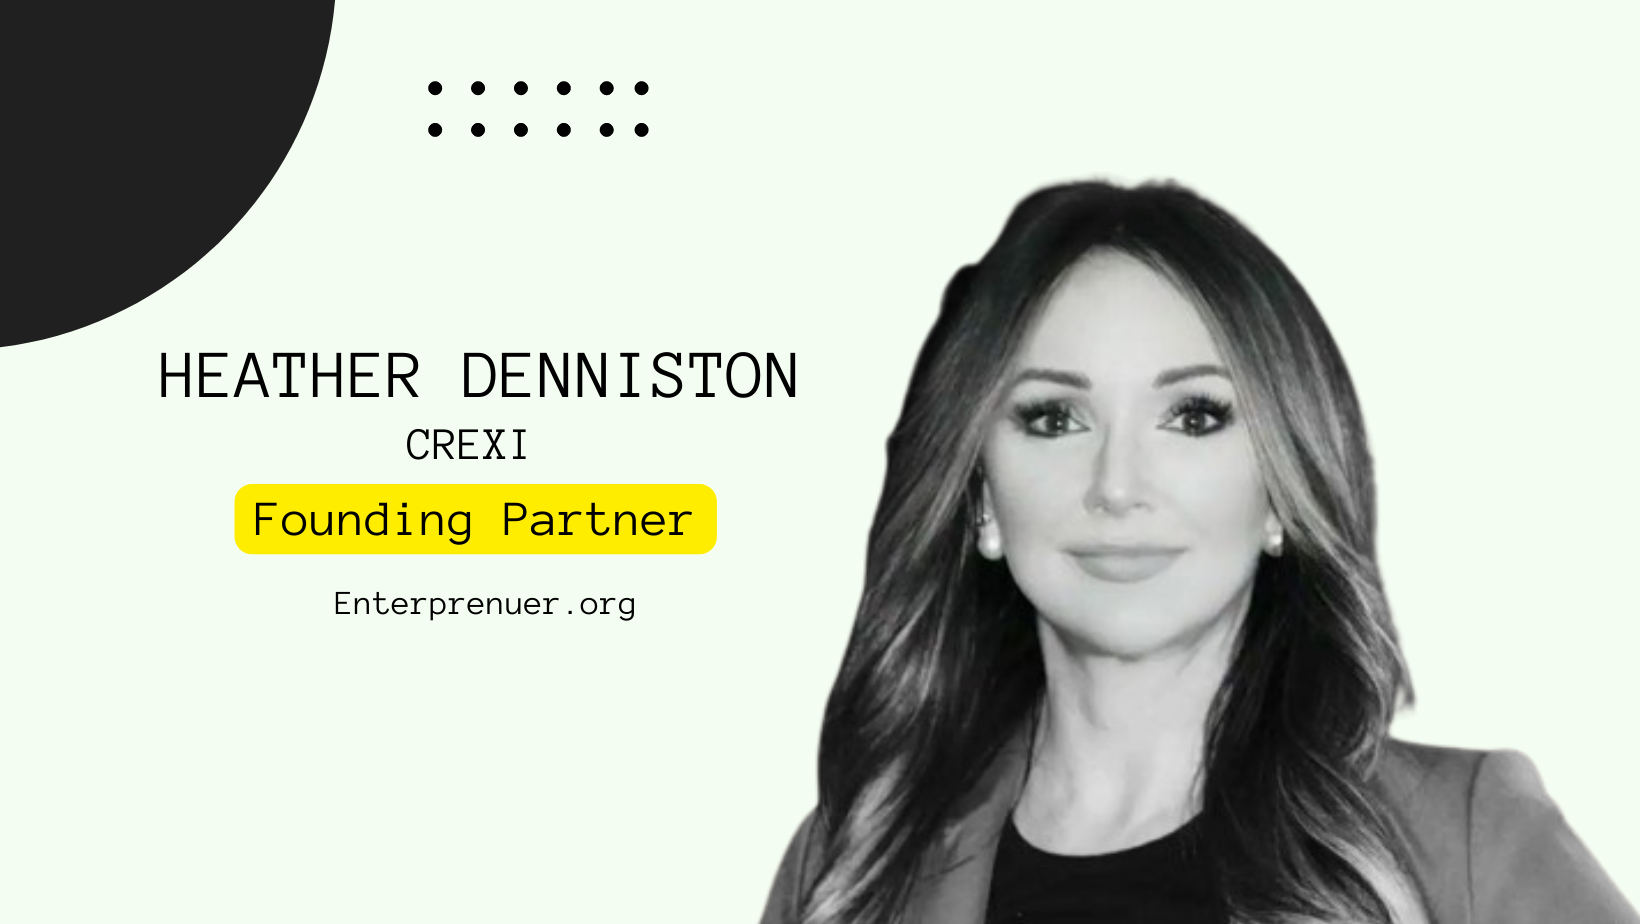 Meet Heather Denniston, Founding Partner at LUDEX